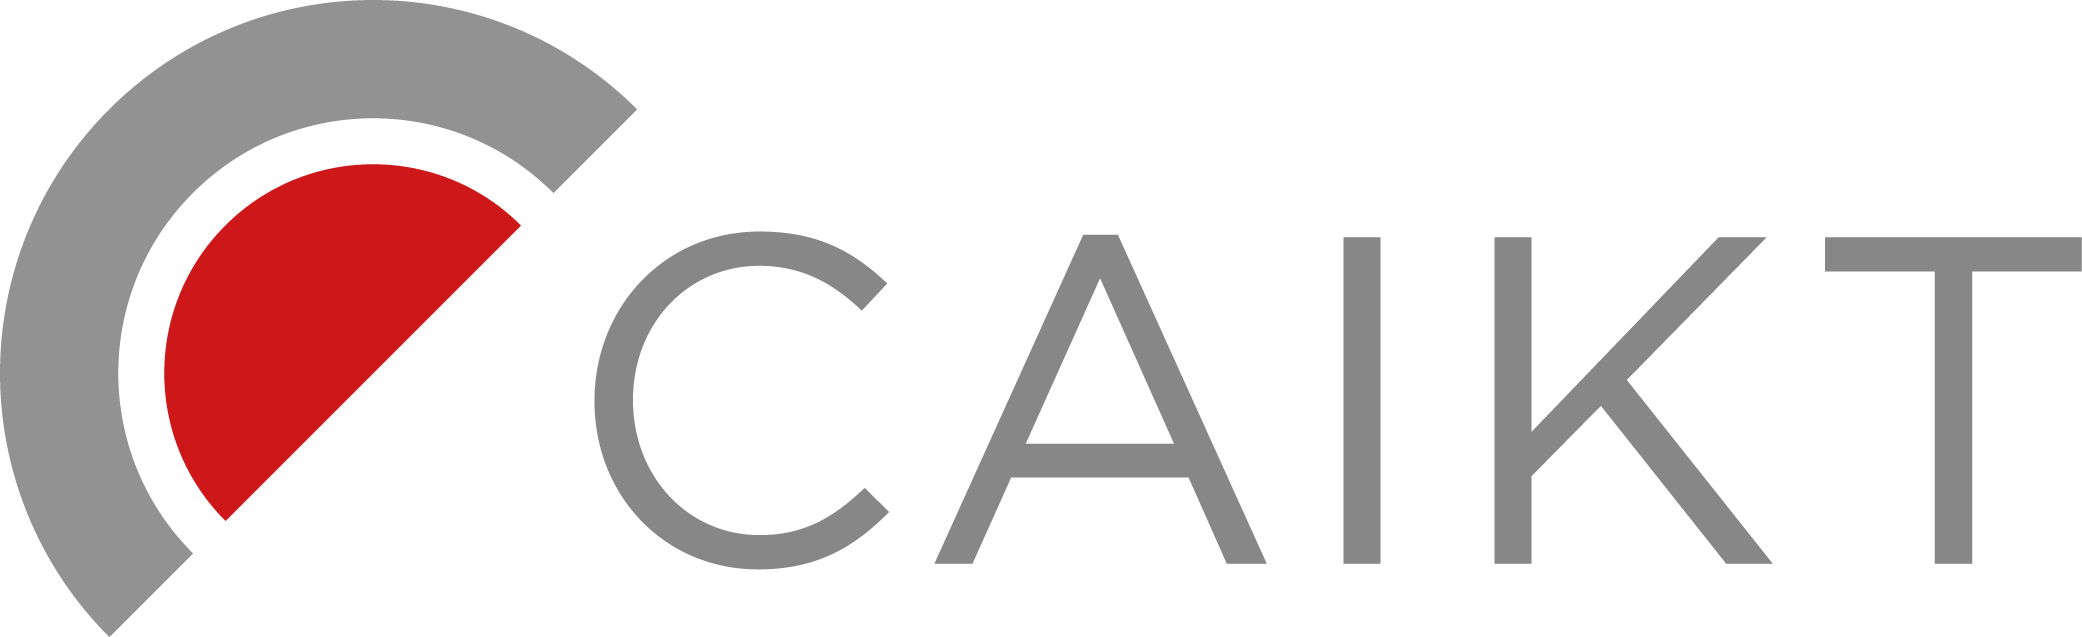 CAIKT_Logo_4c